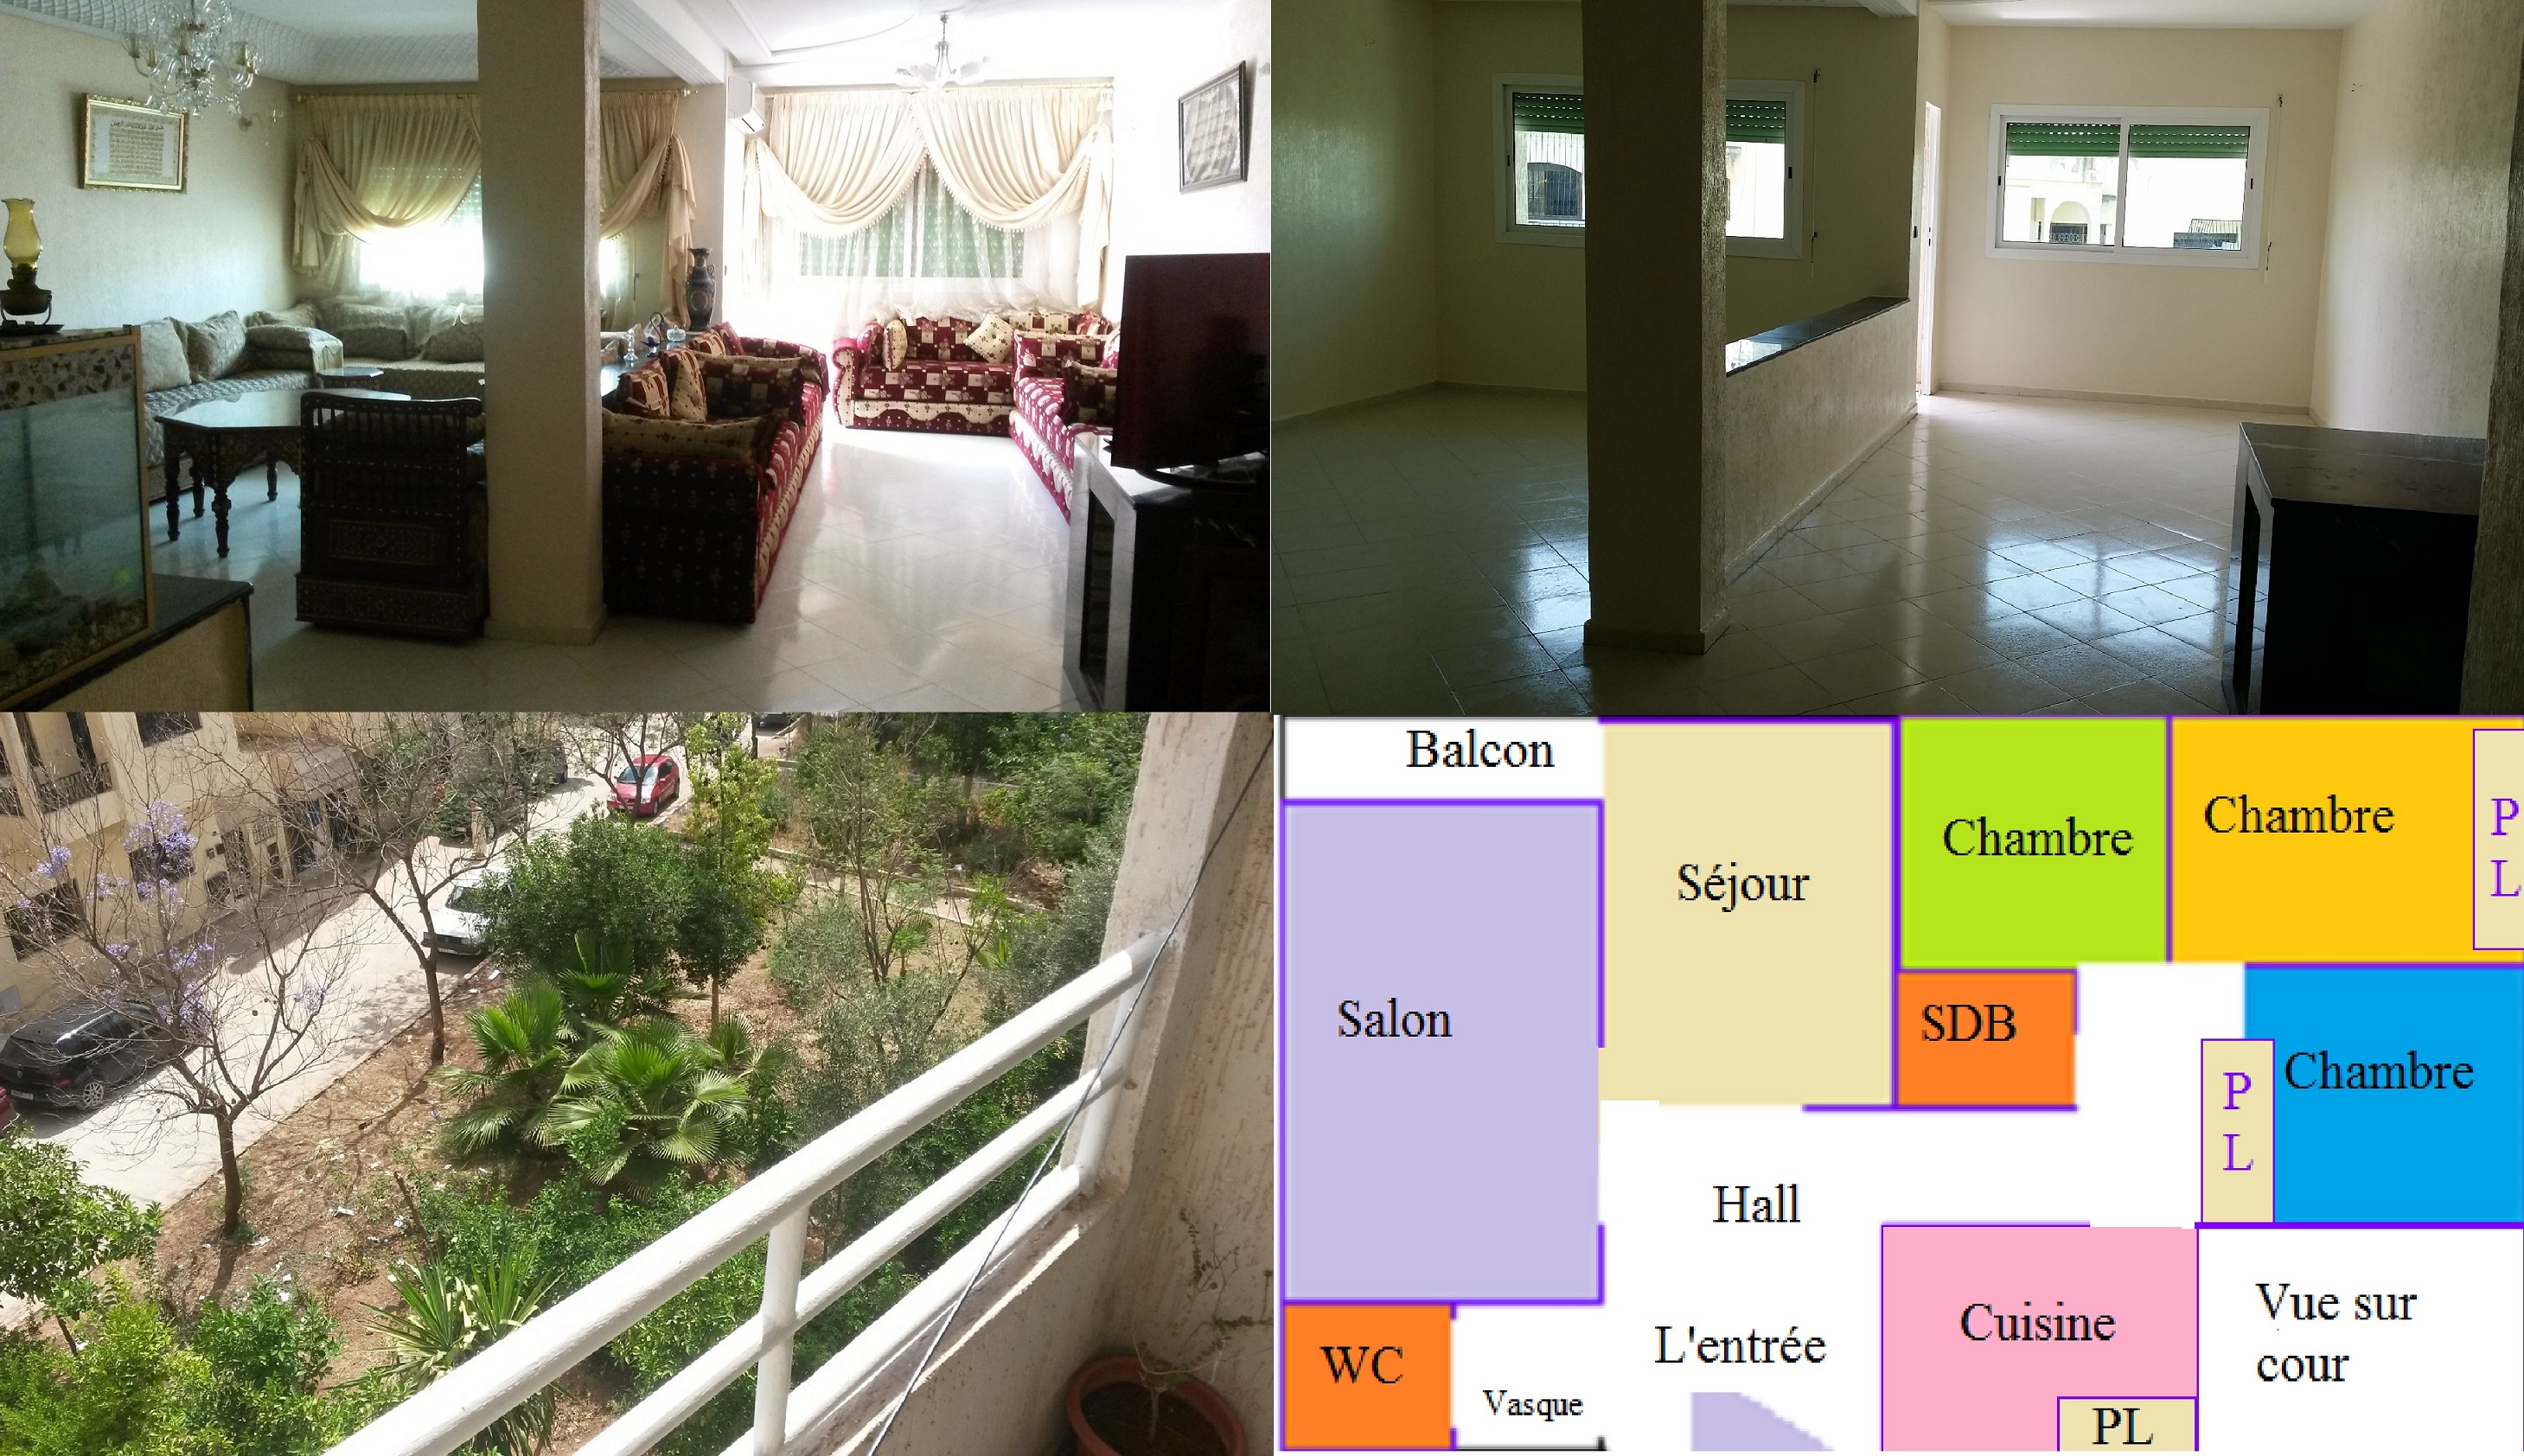 vente un appartement situé au quartier Narjis 'b' à Fes